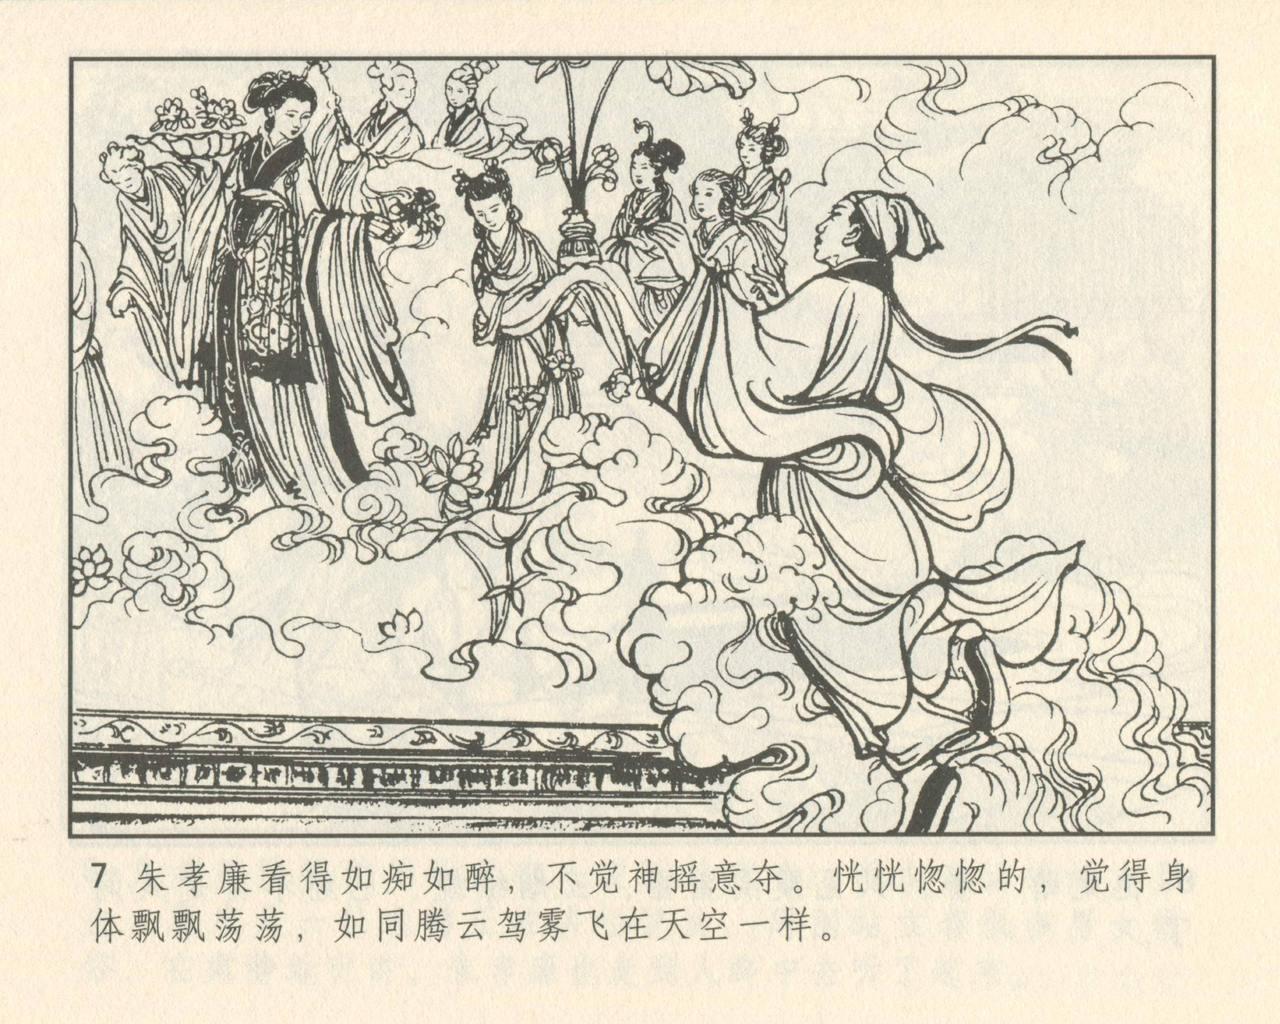 聊斋志异 张玮等绘 天津人民美术出版社 卷二十一 ~ 三十 10